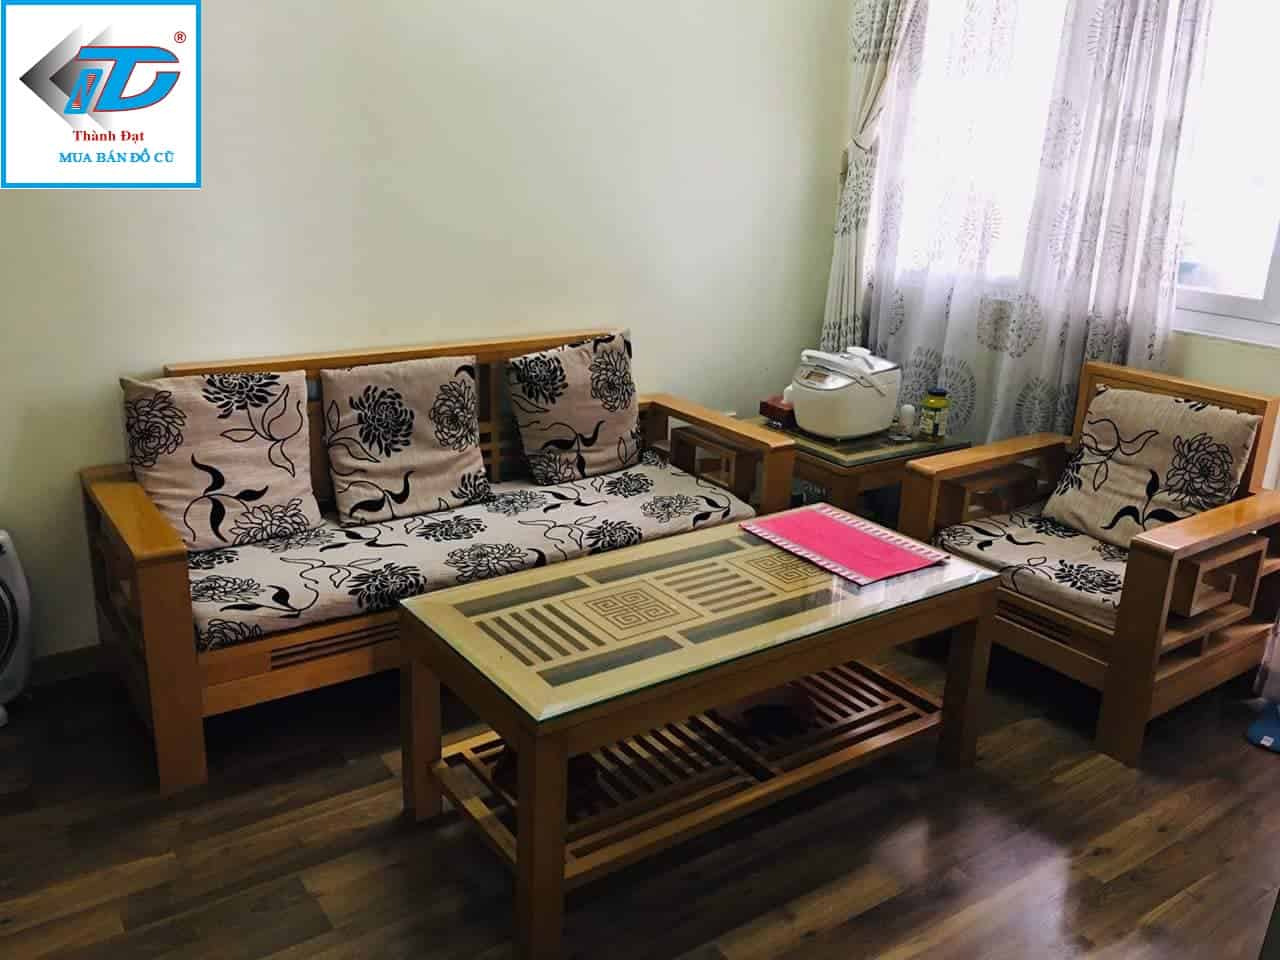 Trao đổi mua bán bàn ghế gỗ phòng kháchcũ mới Hà Nội  Facebook